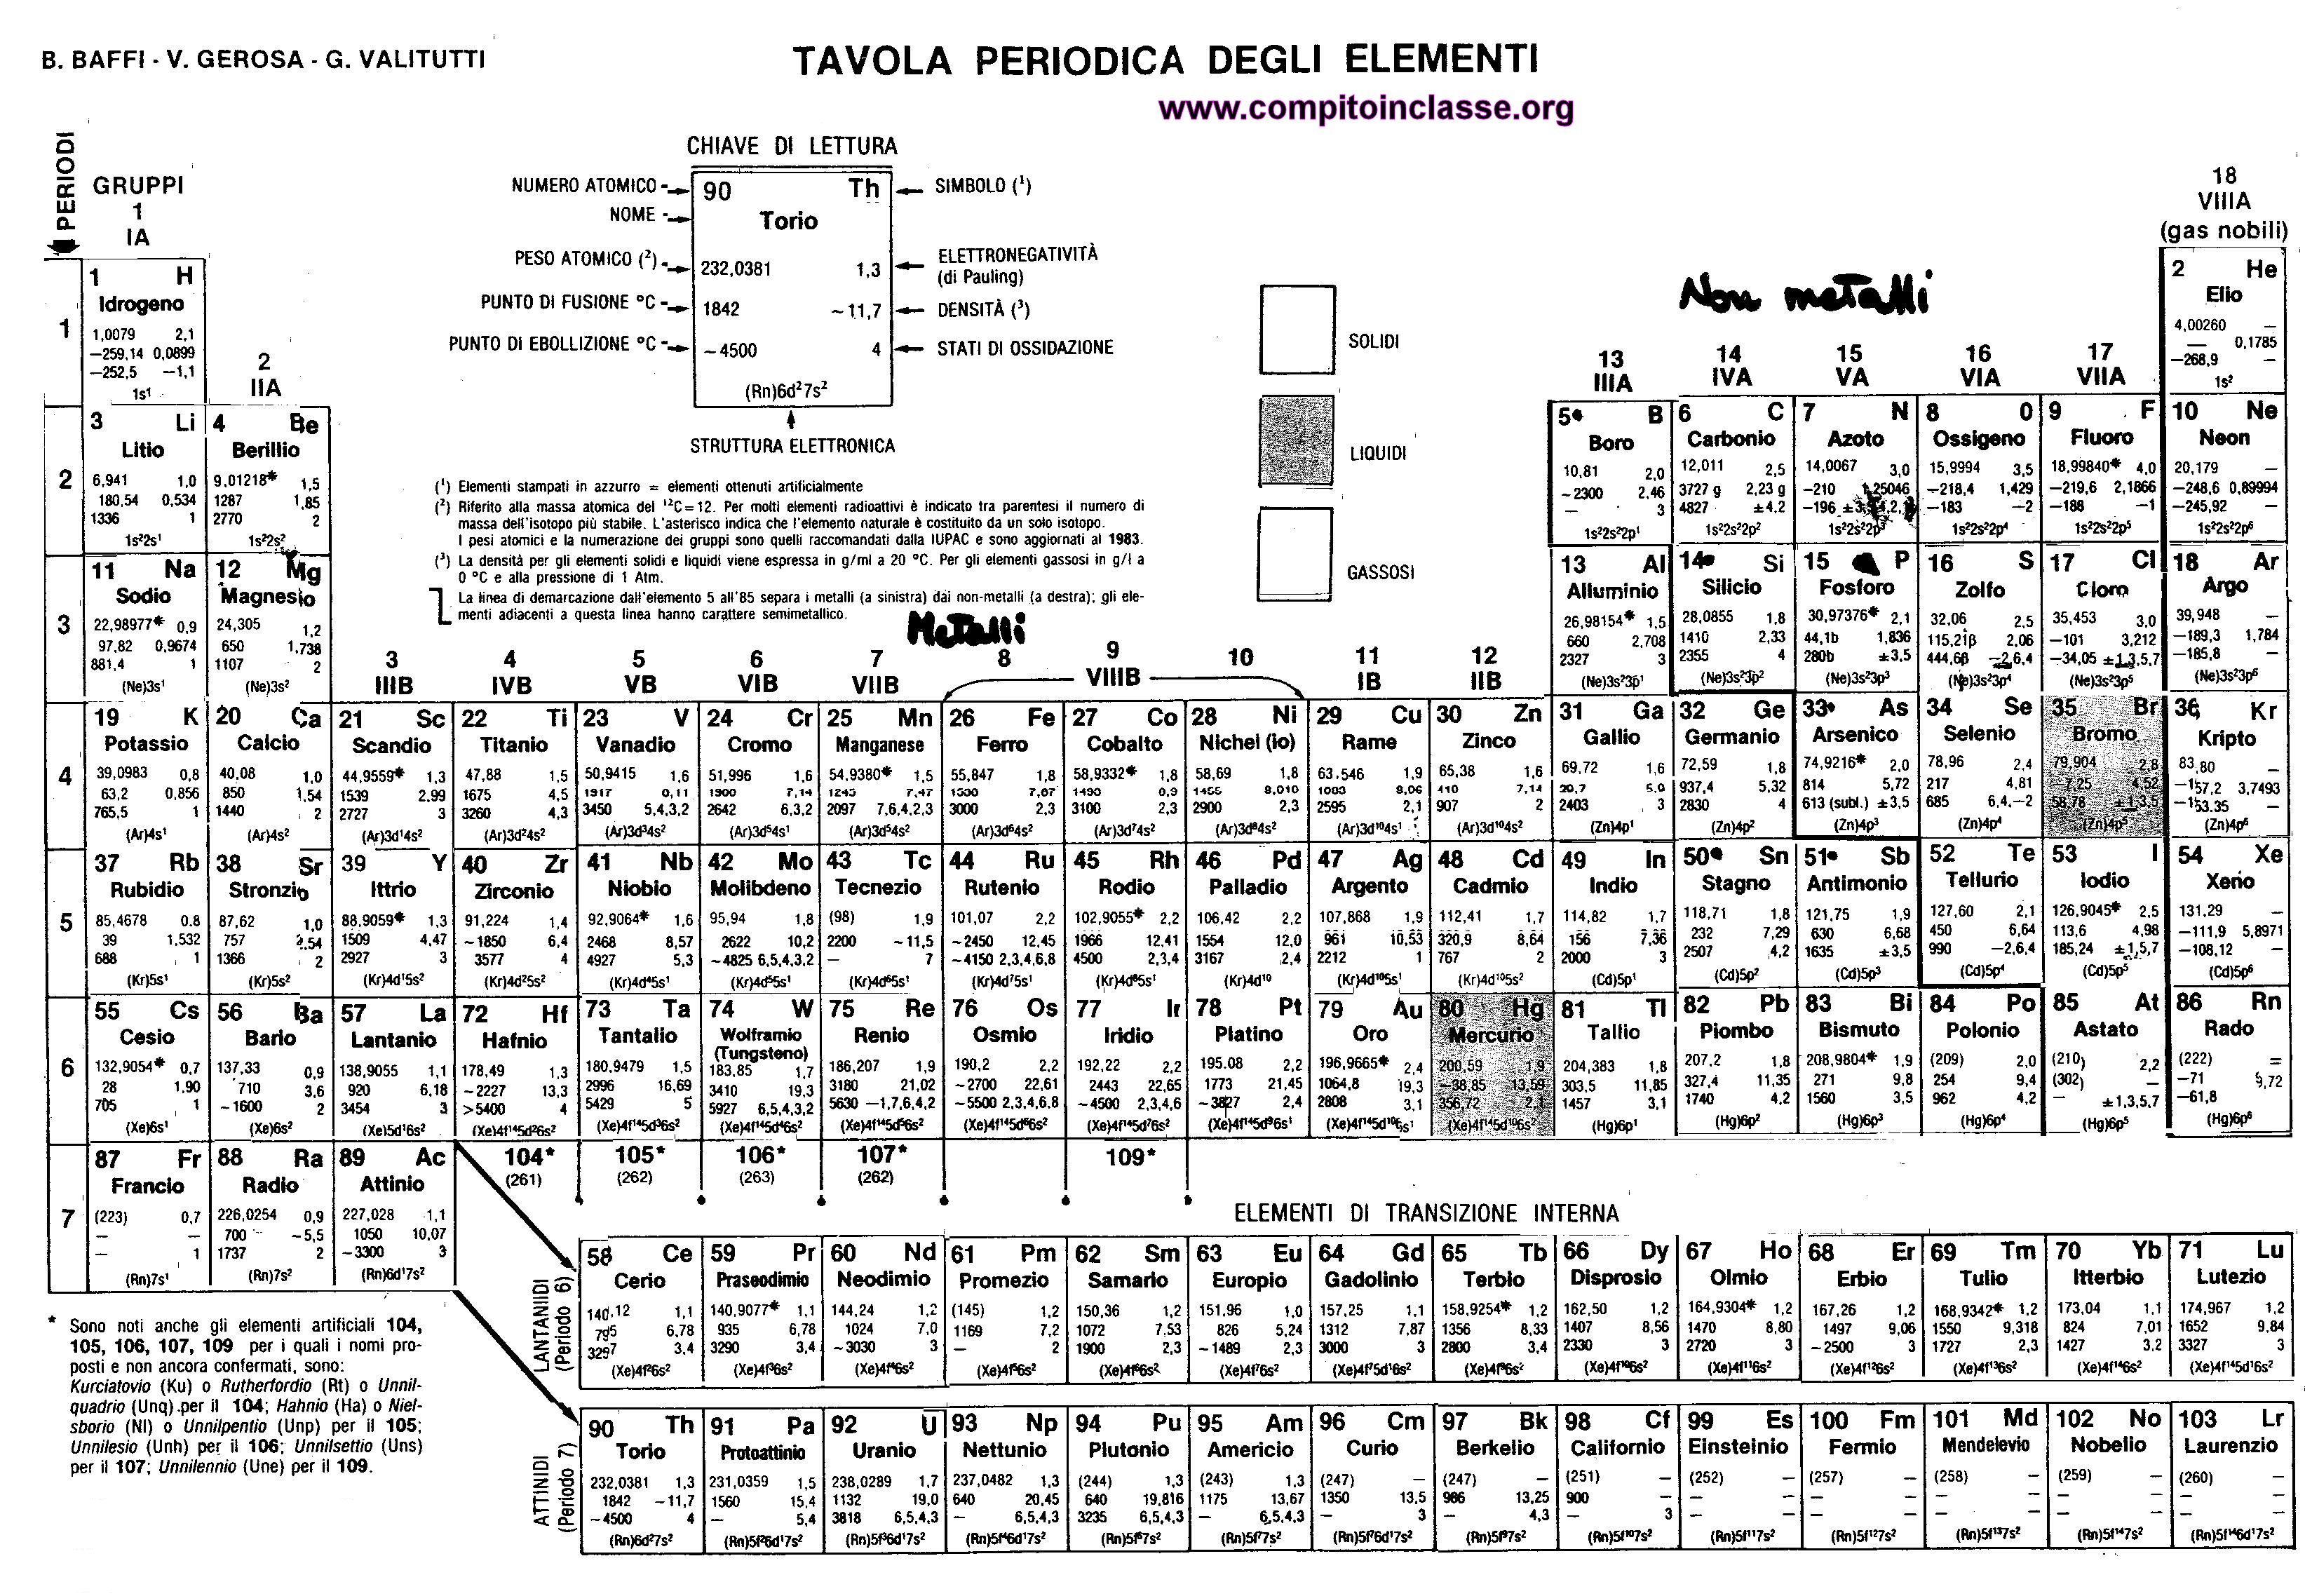 tavola periodica degli elementi di Mendeleev con numeri di ossidazione